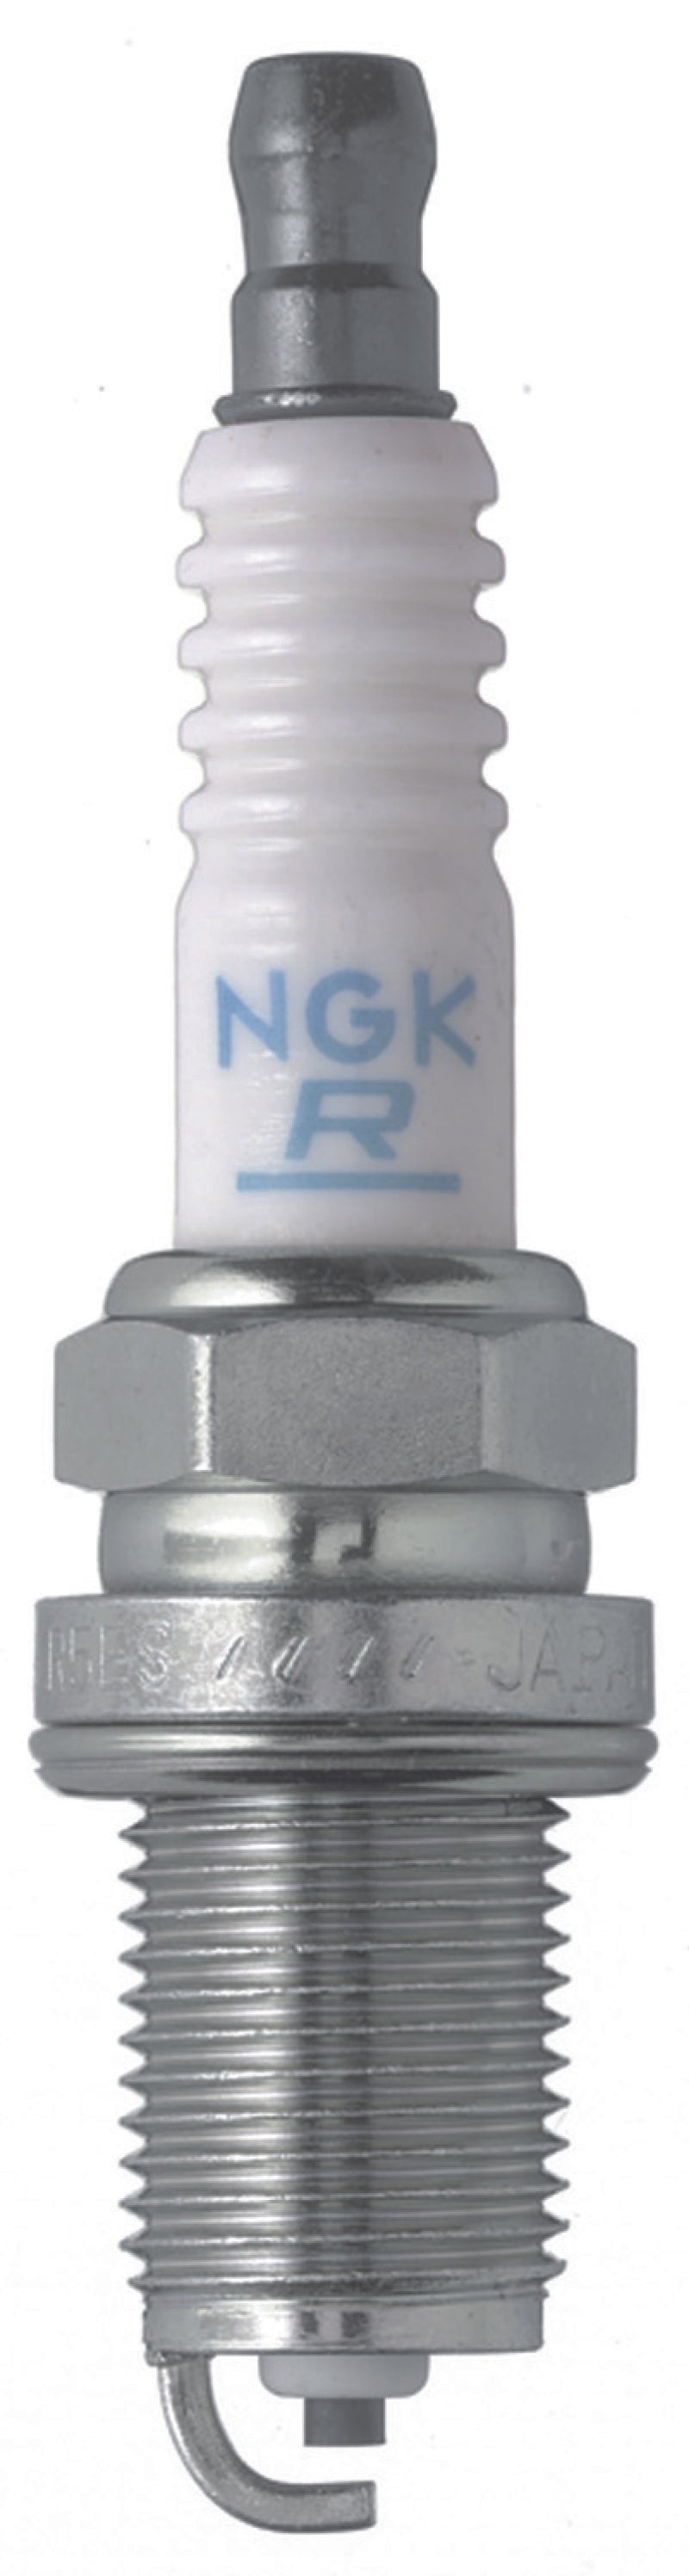 NGK V-Power Spark Plug Box of 4 (BKR7E-E).